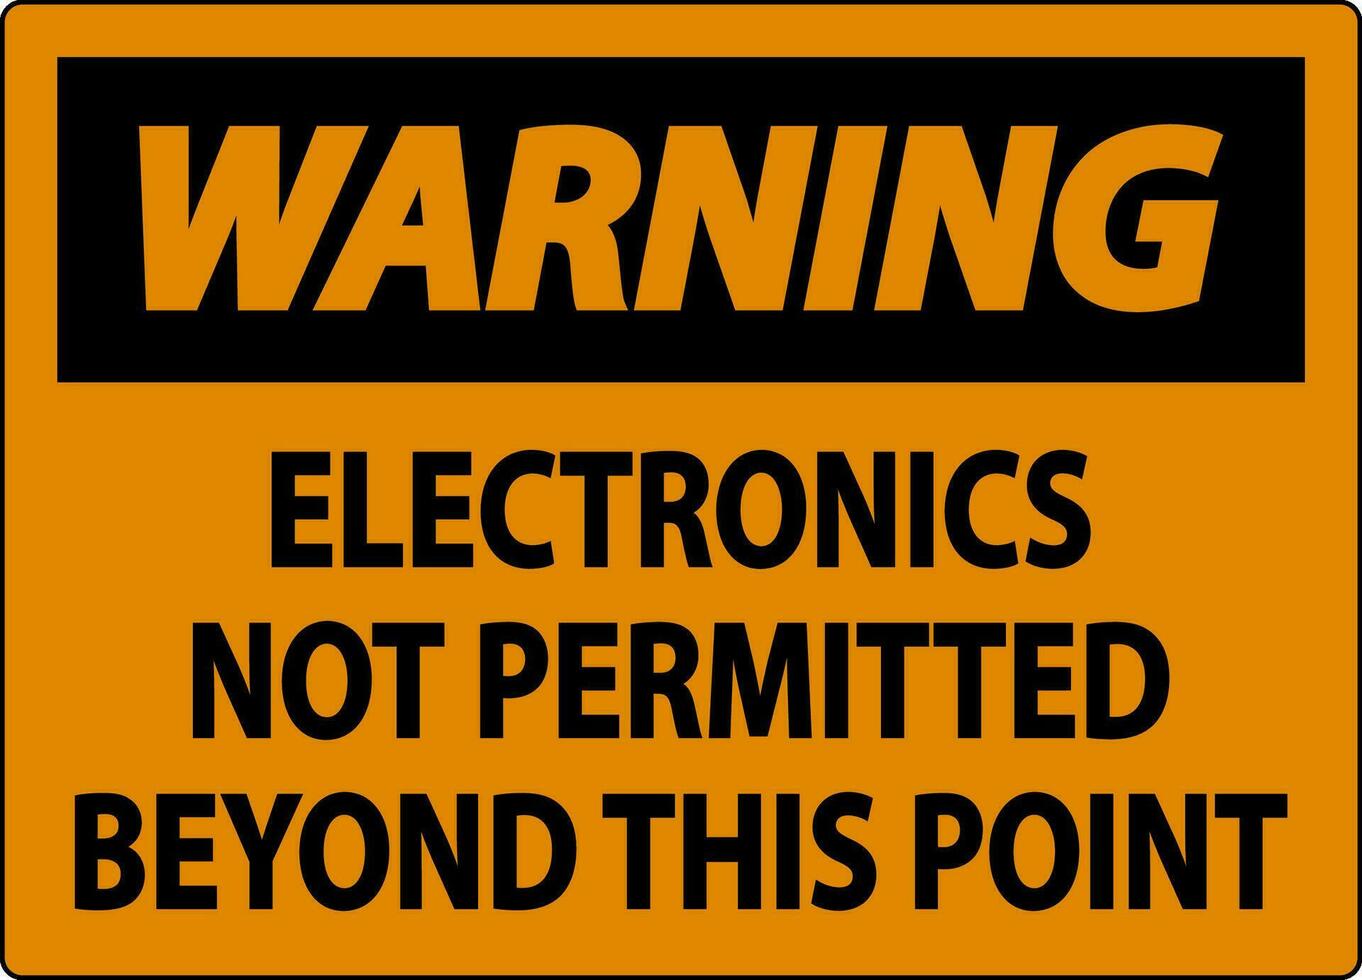 Warnung Zeichen Elektronik nicht zulässig darüber hinaus diese Punkt vektor